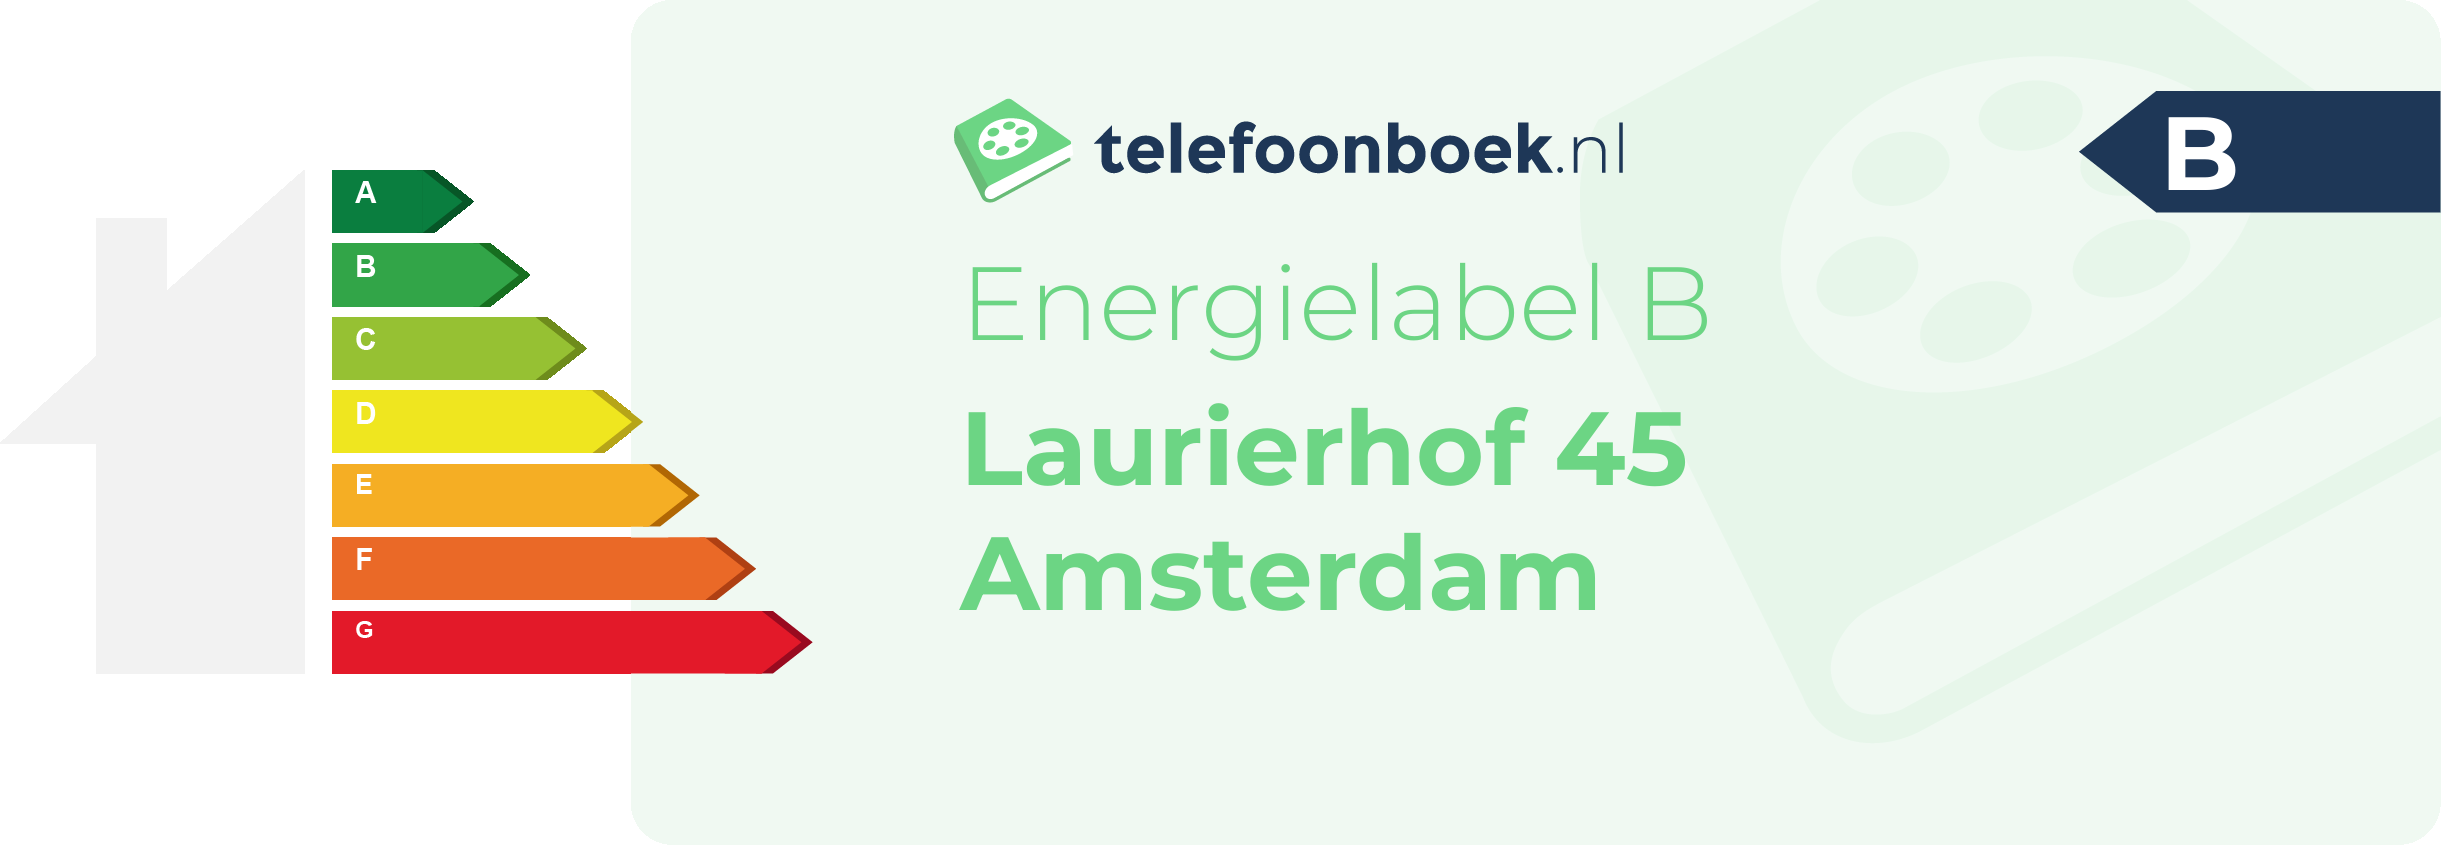 Energielabel Laurierhof 45 Amsterdam